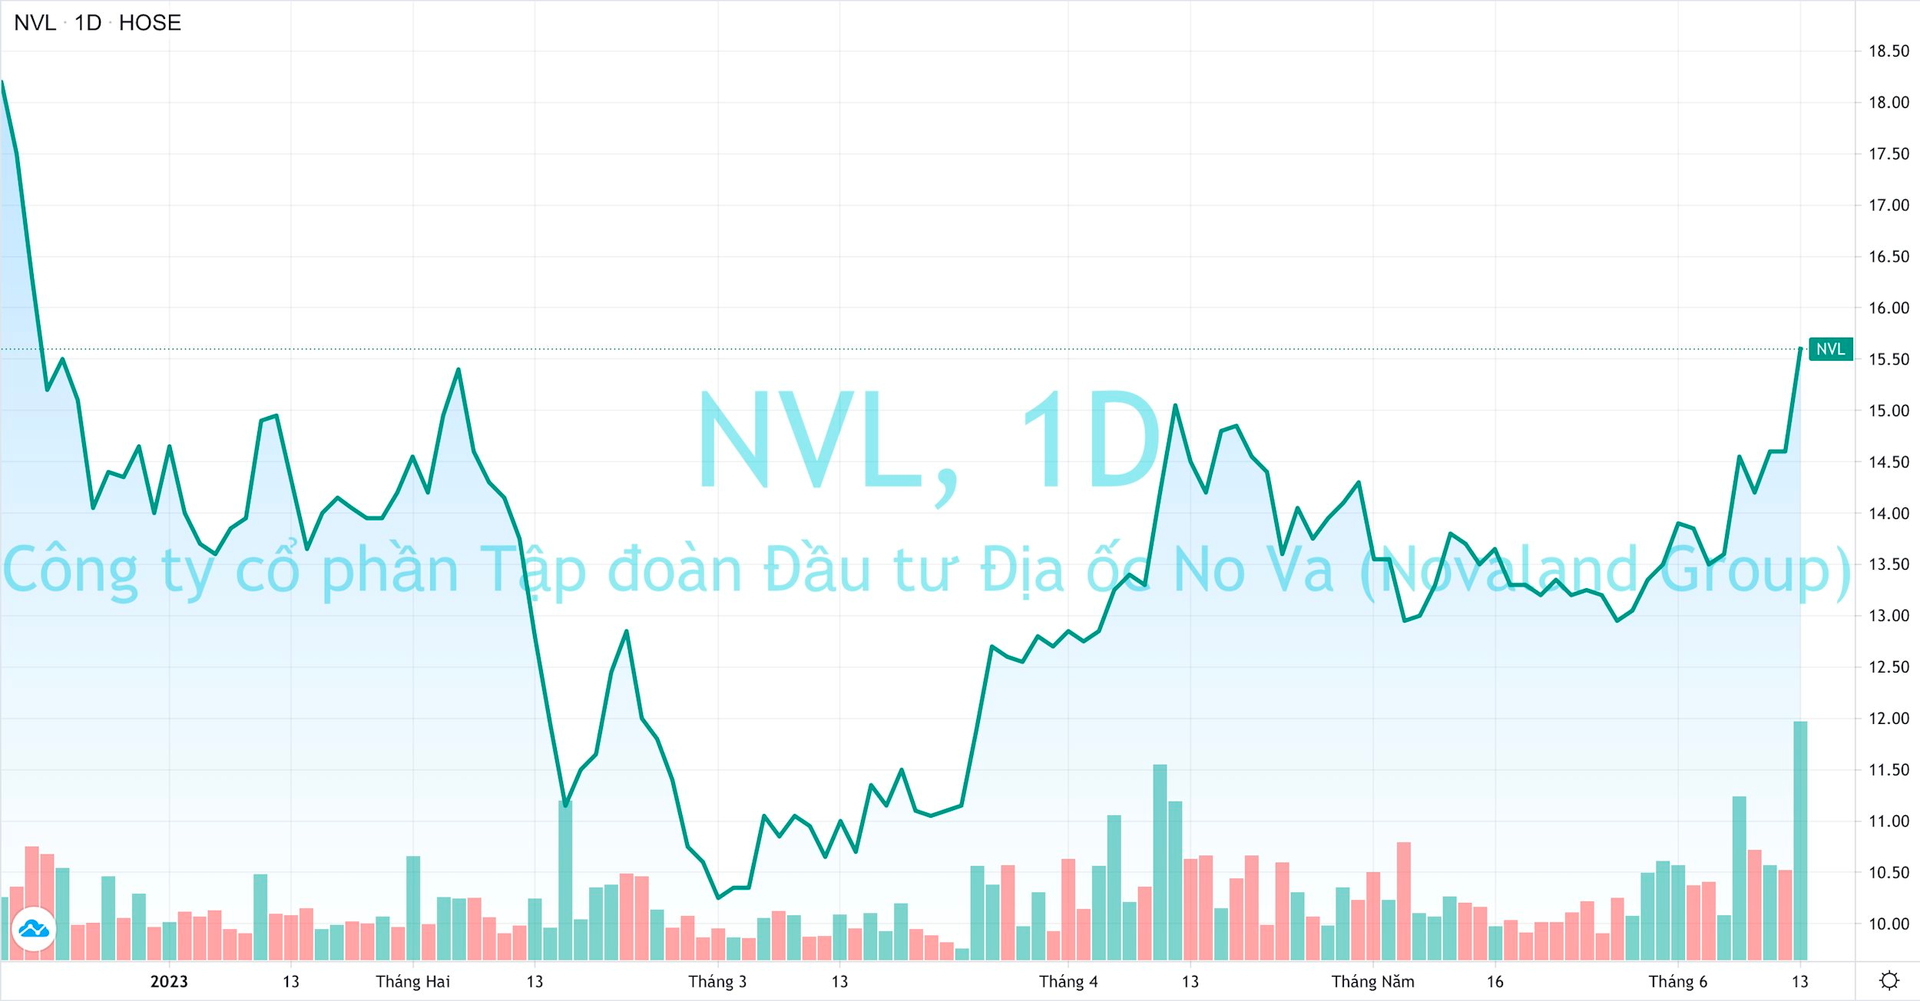 Khớp lệnh hơn 1.200 tỷ đồng, cổ phiếu Novaland lên cao nhất trong gần nửa năm - Ảnh 1.